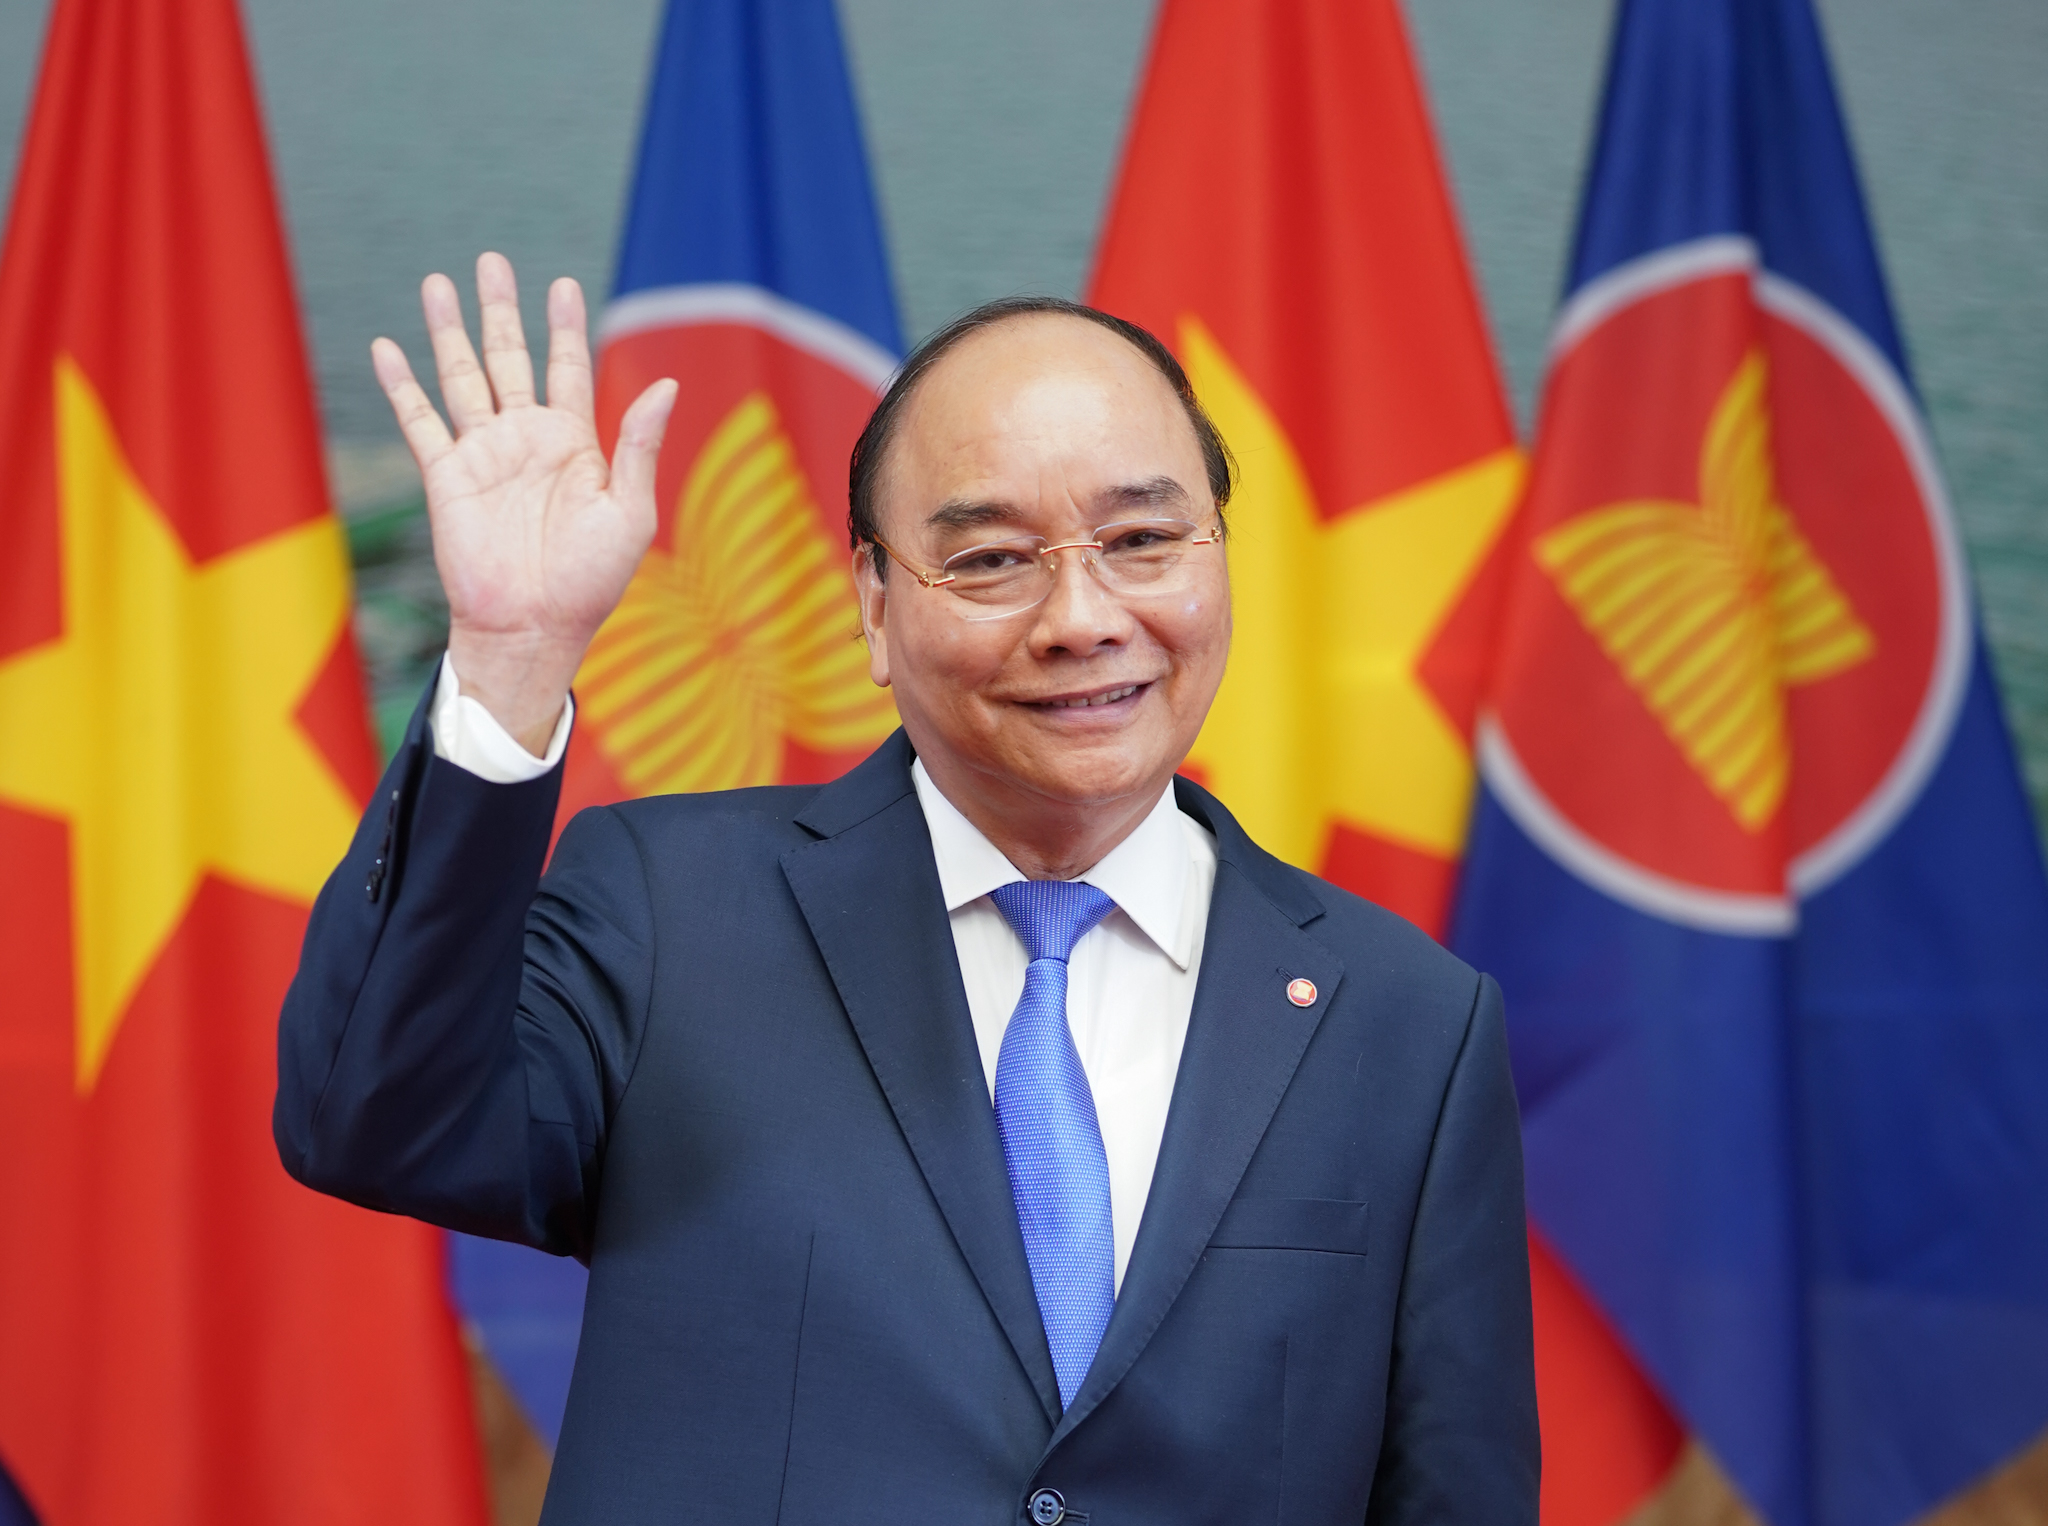 Thủ tướng Chính phủ nước Cộng hòa xã hội chủ nghĩa Việt Nam Nguyễn Xuân Phúc. Ảnh: VGP/Quang Hiếu